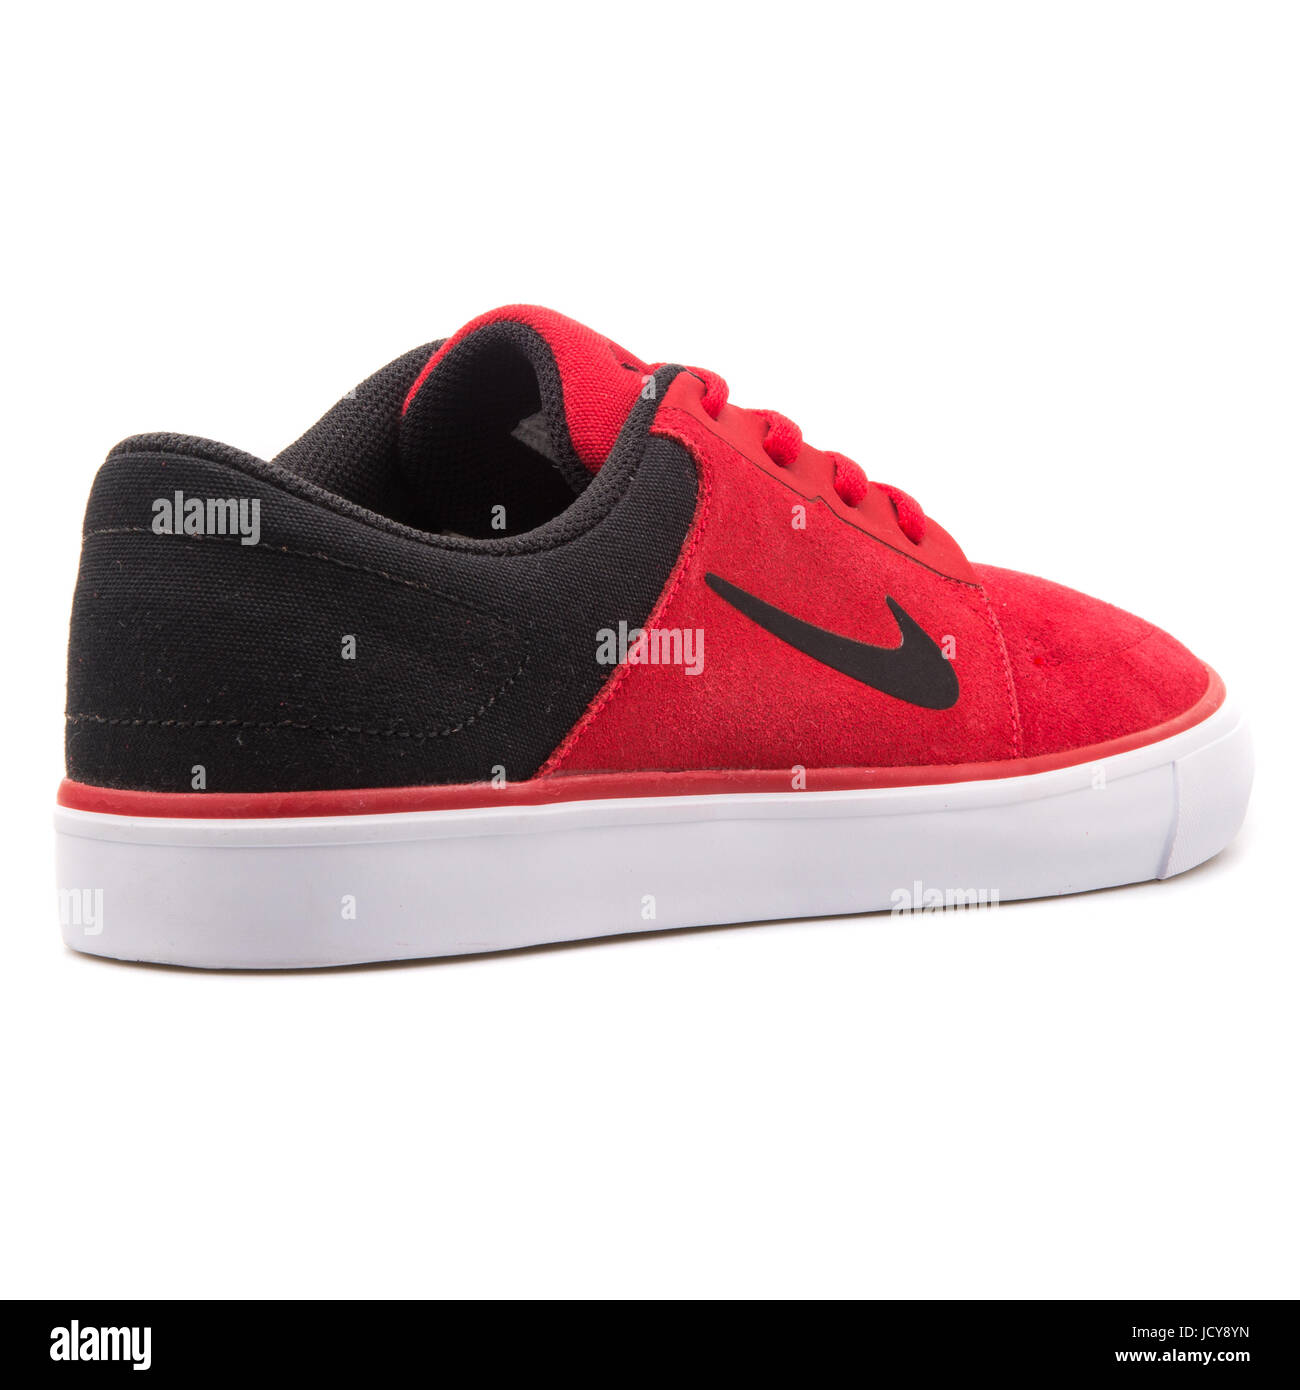 Salle de sport Nike SB Portmore rouge, noir et blanc - chaussures de skate  hommes 725027-601 Photo Stock - Alamy